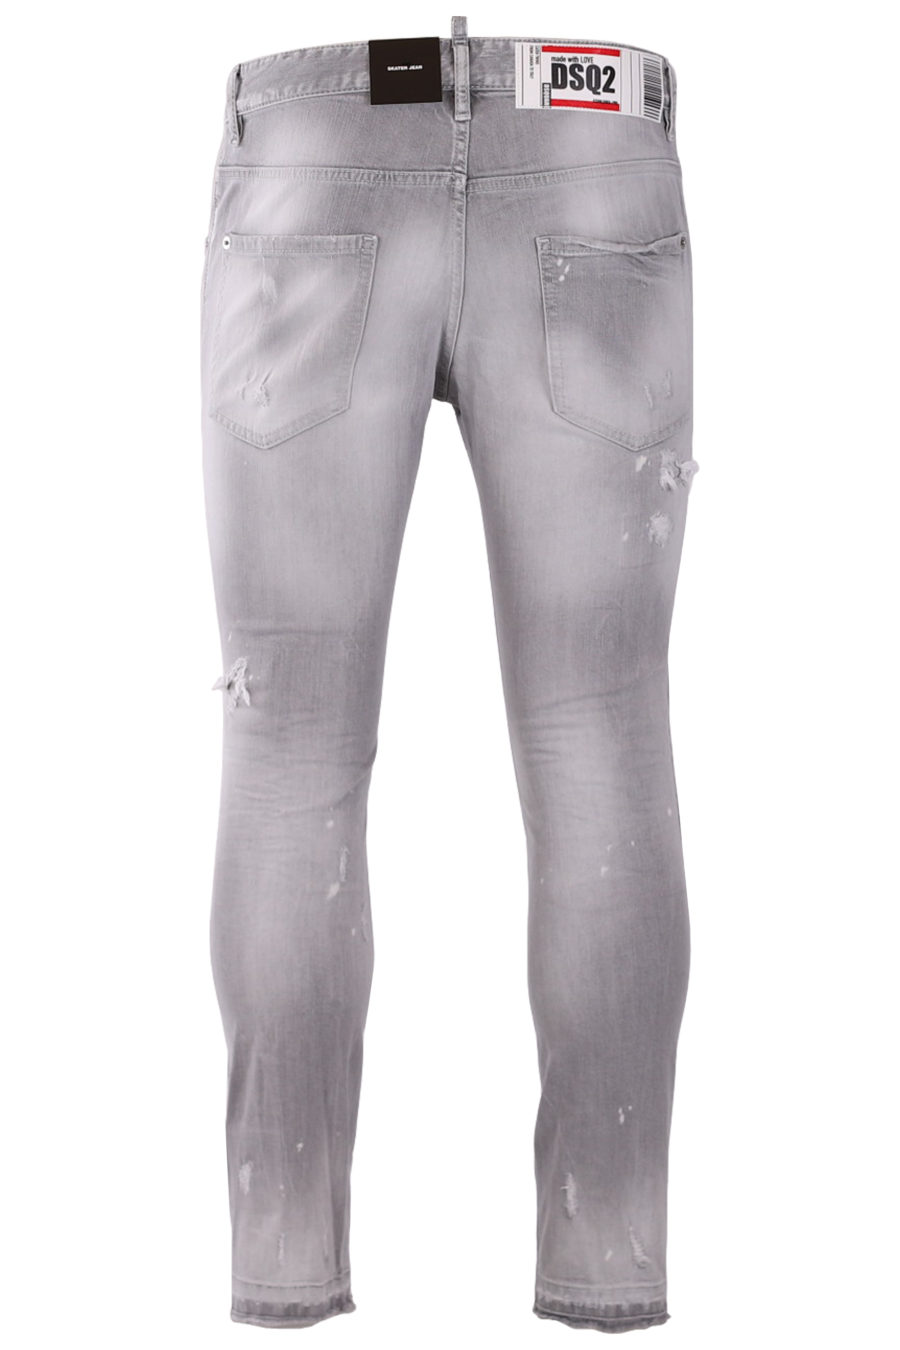 Pantalón vaquero "Skater" gris claro con parches - 6c65ccf421e22048635e7e9d5f23aaad04a2fc50